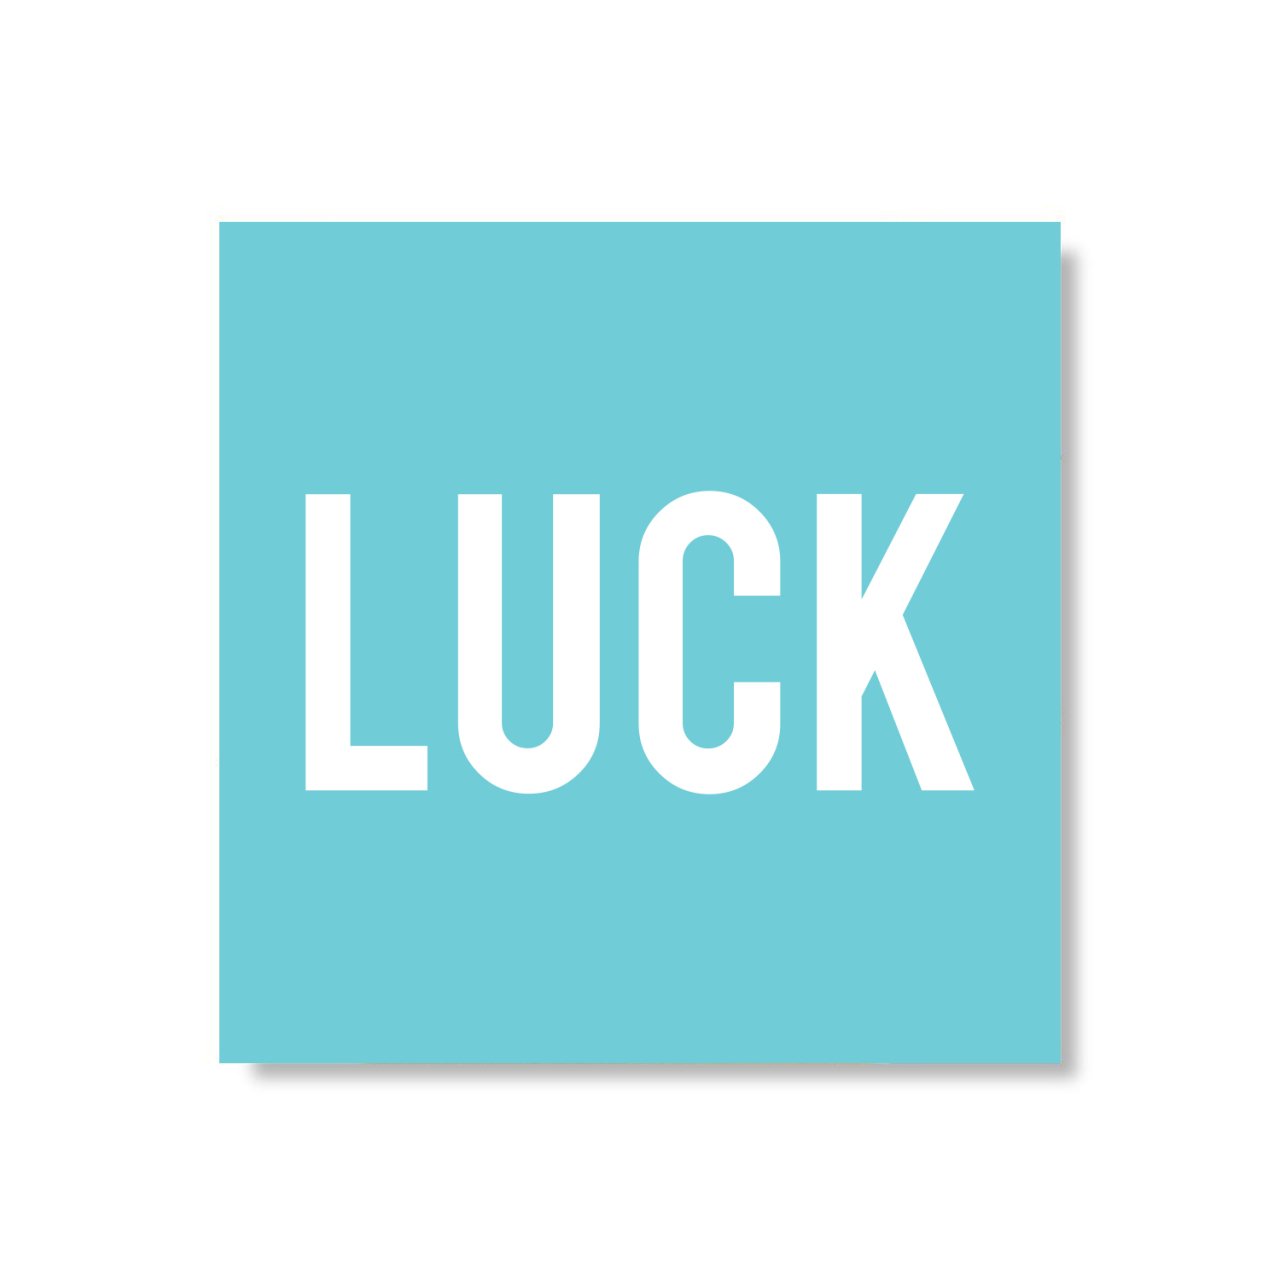 Luck Magnet